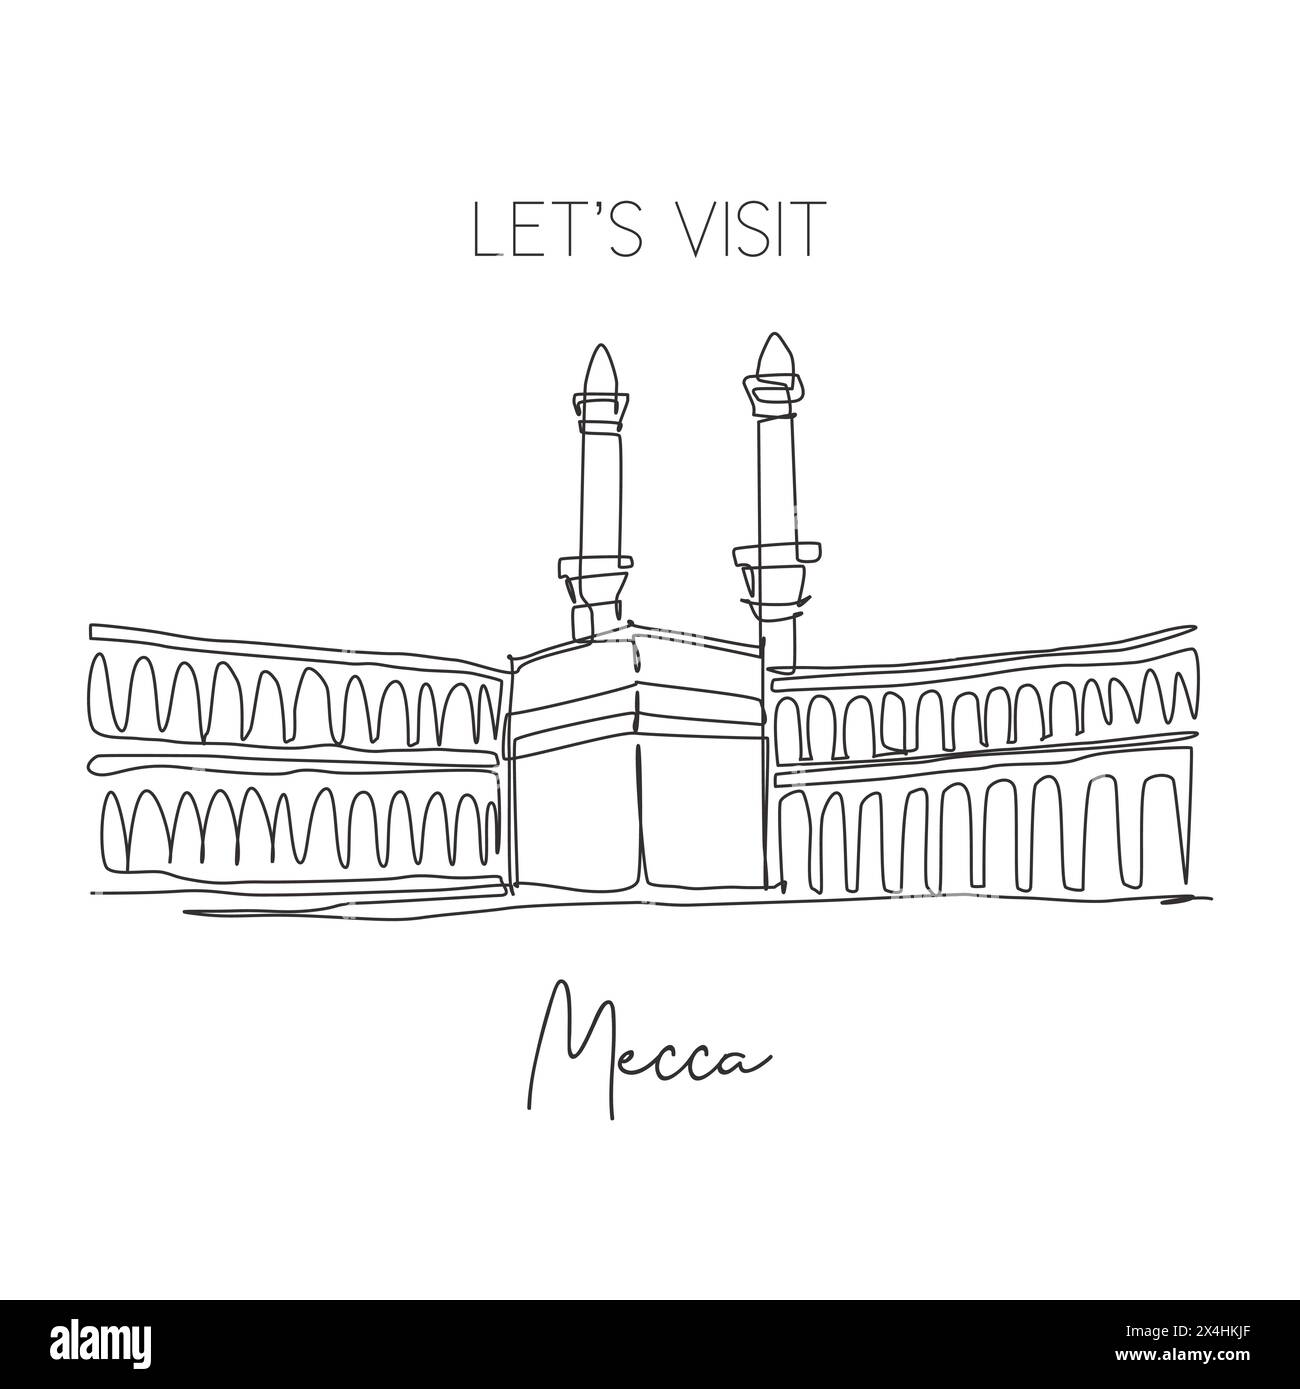 Dessin en ligne continue unique du repère Masjidil Haram. Lieu le plus Saint à la Mecque, Arabie Saoudite. Concept d'art de décoration murale de voyage religieux hajj et umrah Illustration de Vecteur